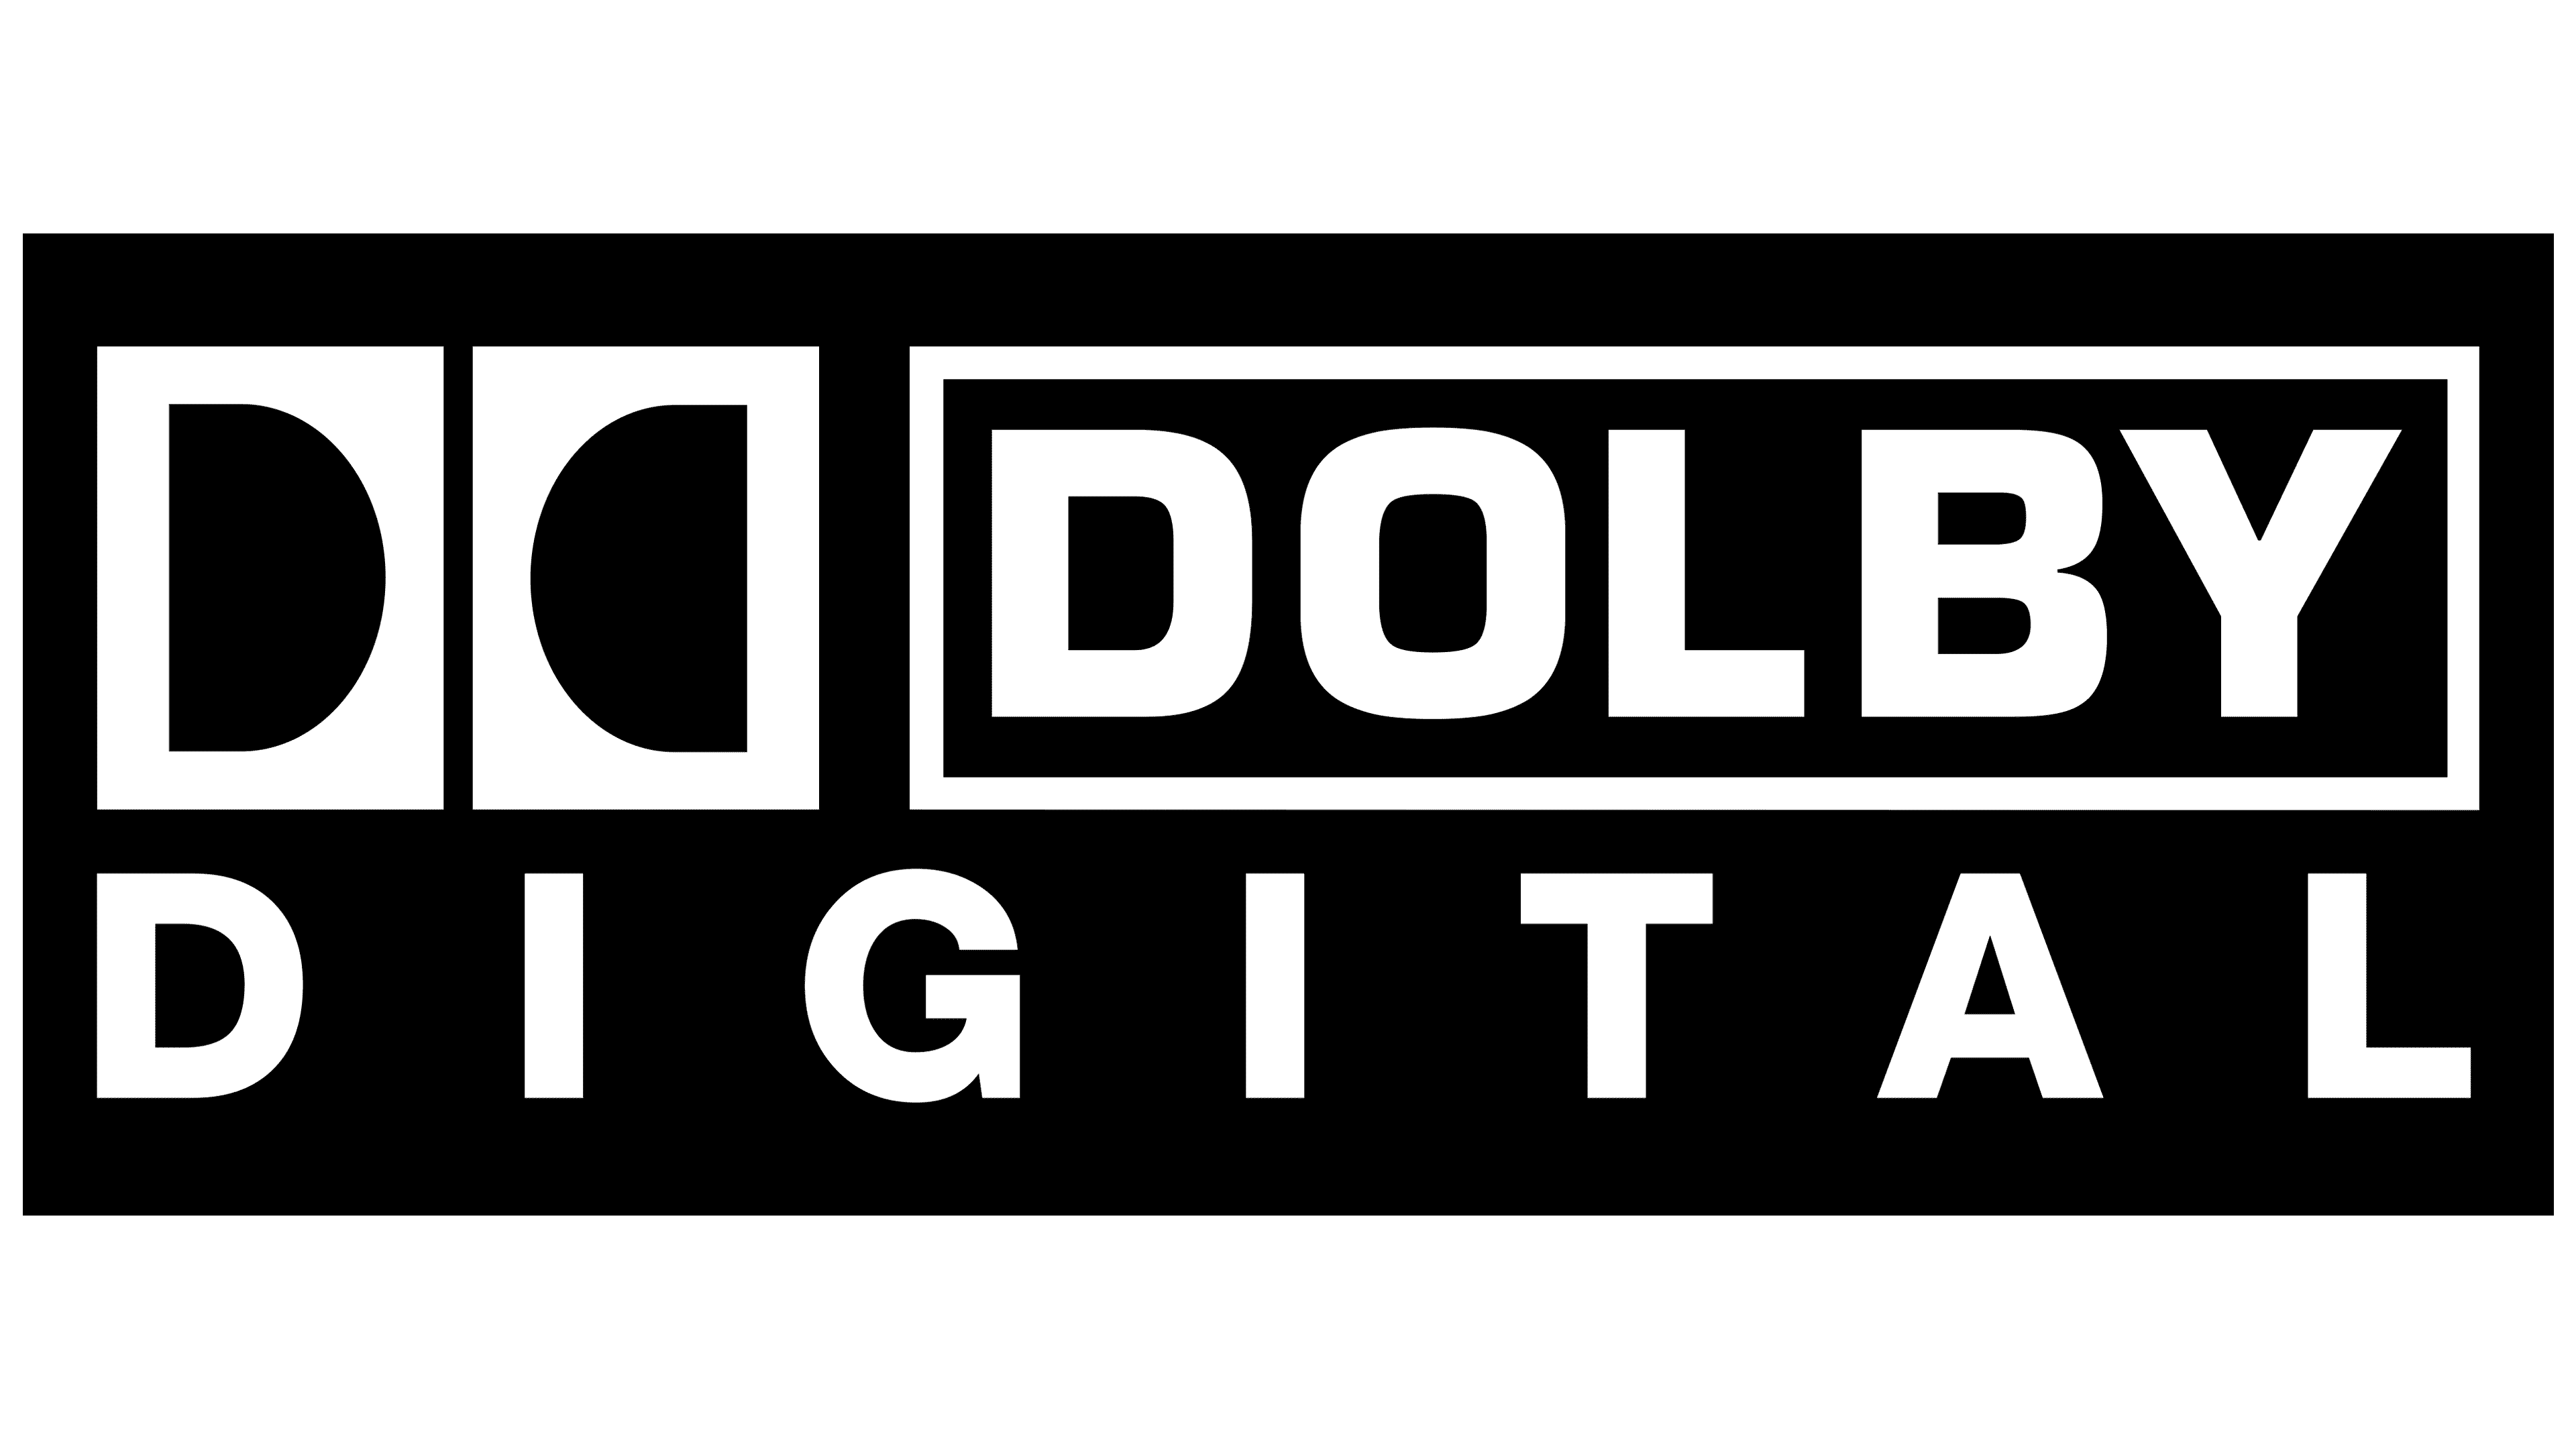 dolby digital 5.1 codec